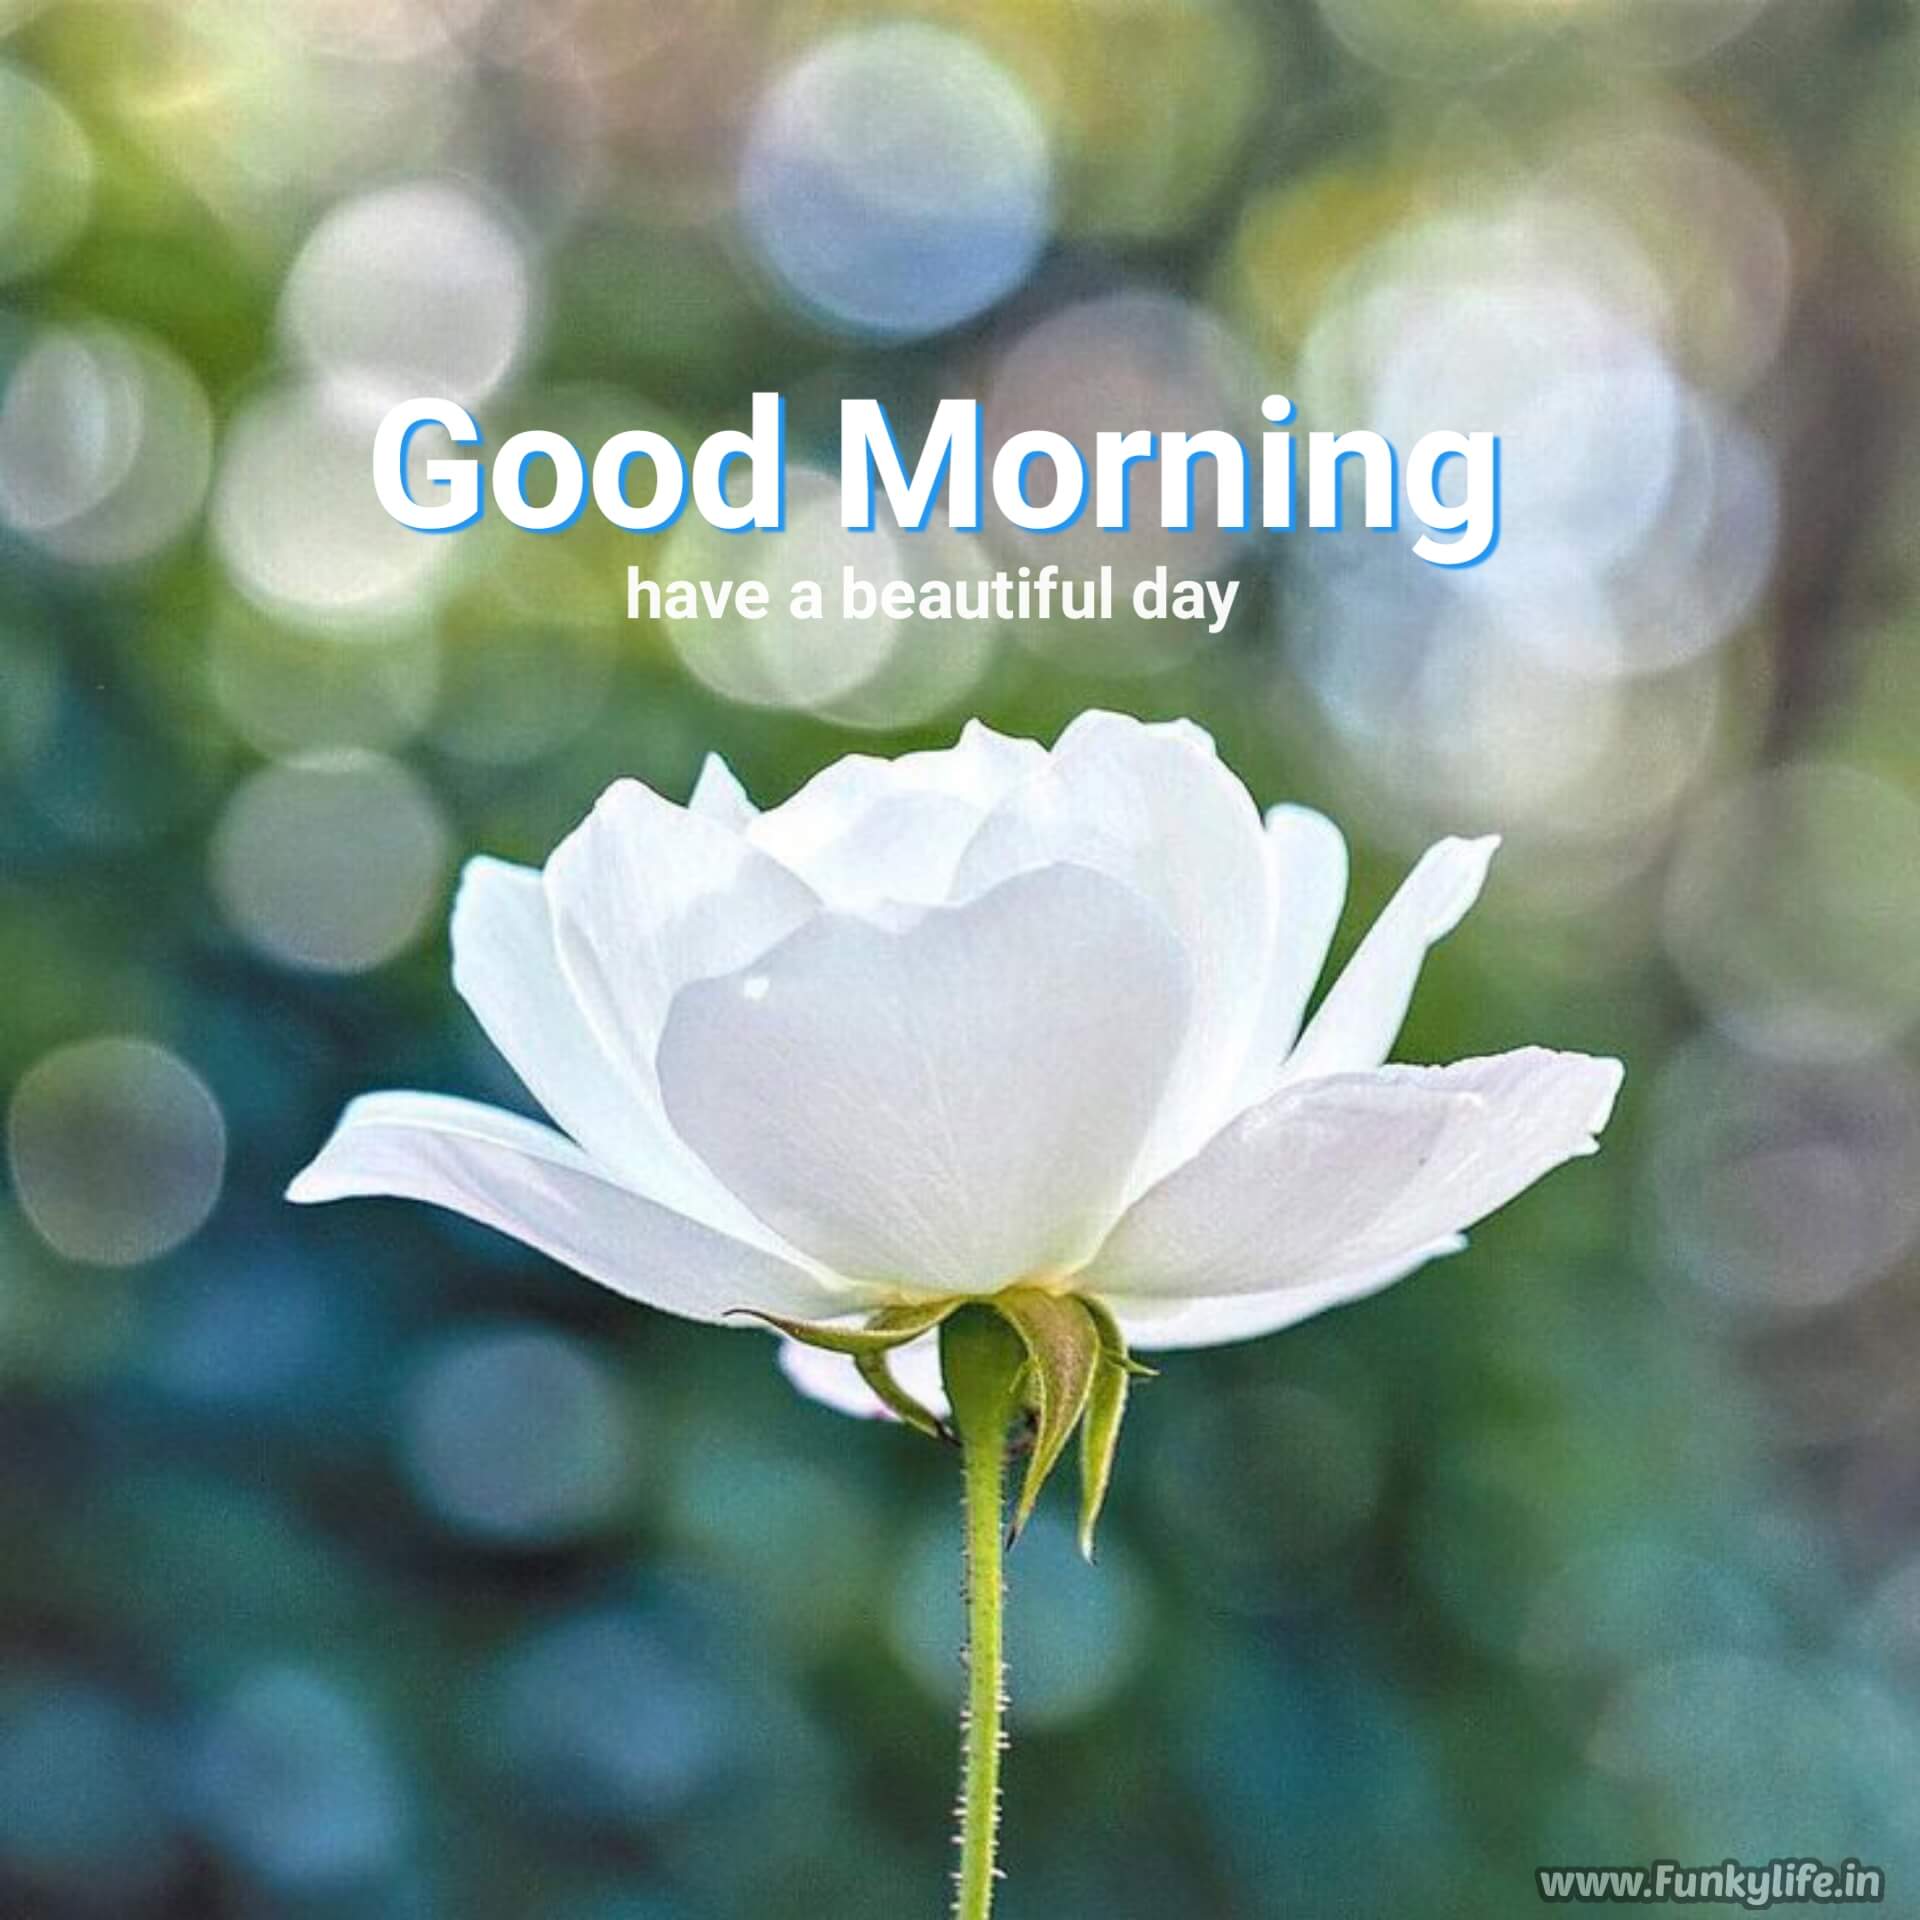 Good Morning Image flower